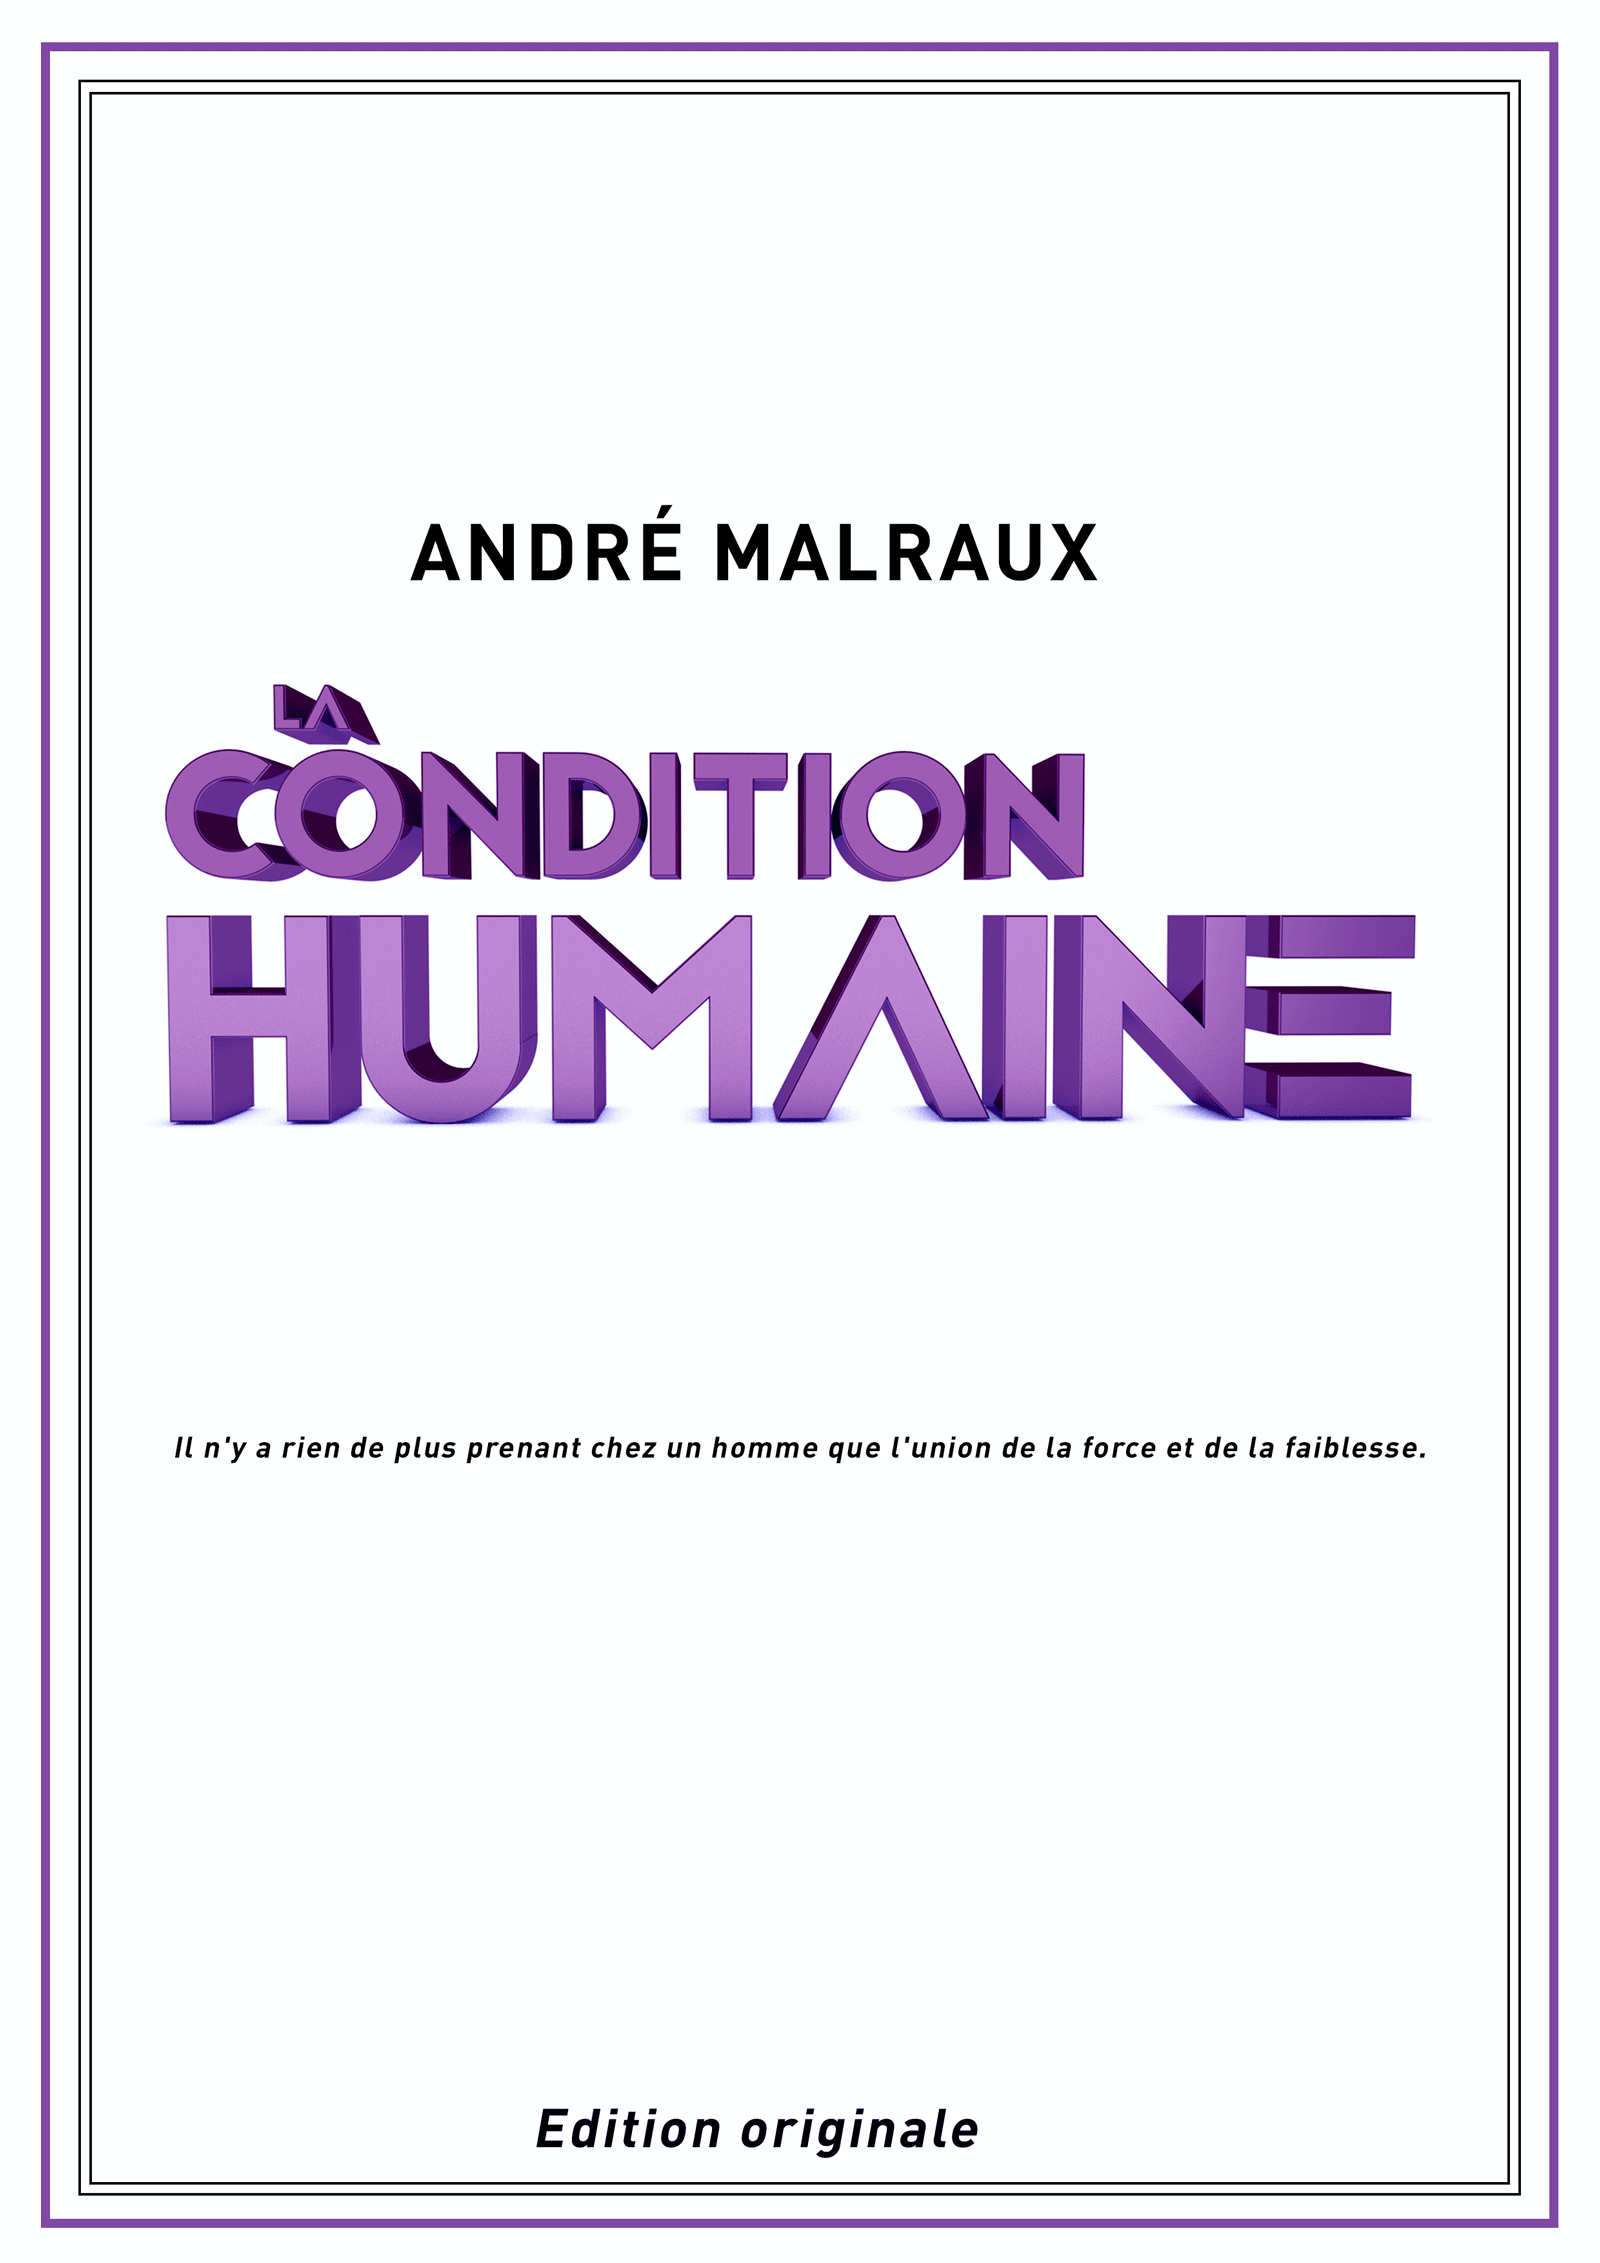 Condition humaine projet typo3D couverture livre